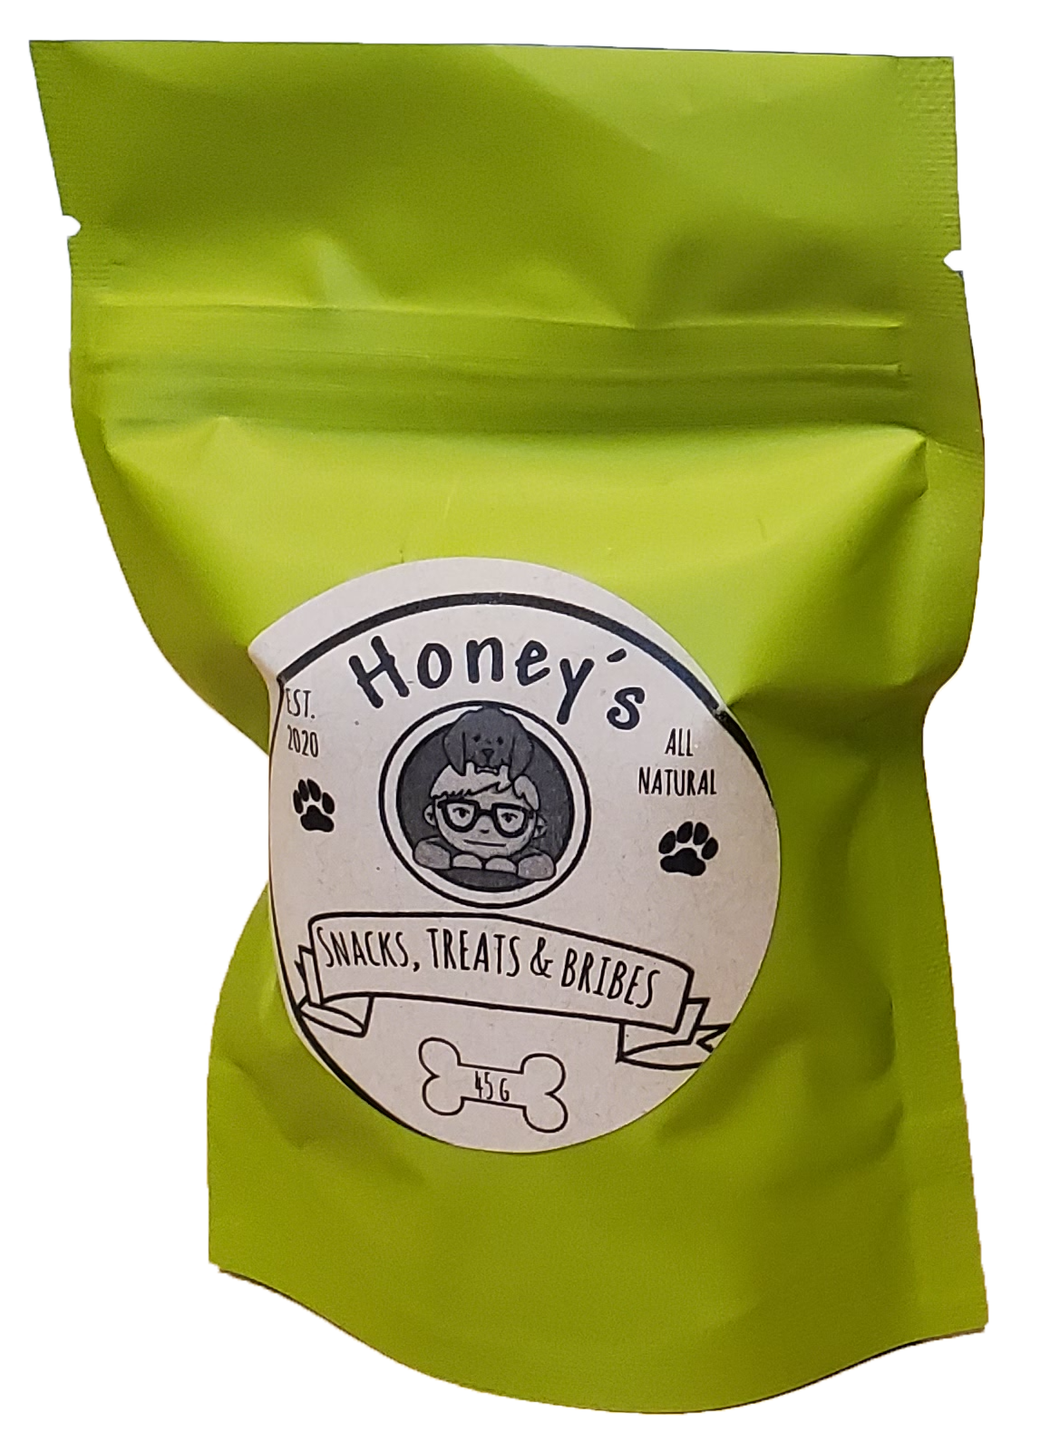 Honey's Snacks, Treats & Bribes